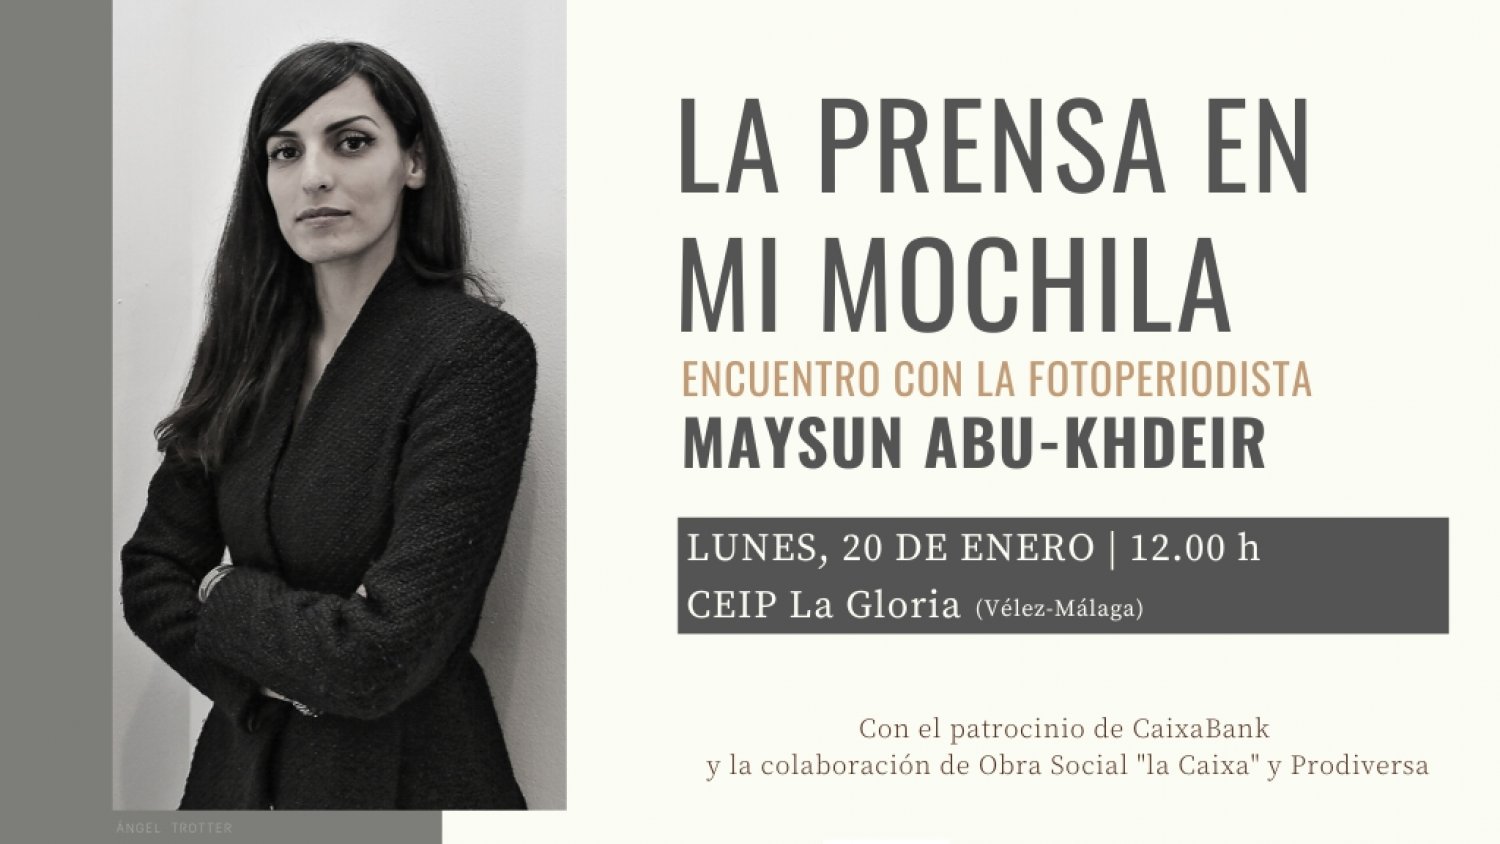 La fotoperiodista Maysun participará el 20 de enero en un encuentro con alumnos de Vélez-Málaga